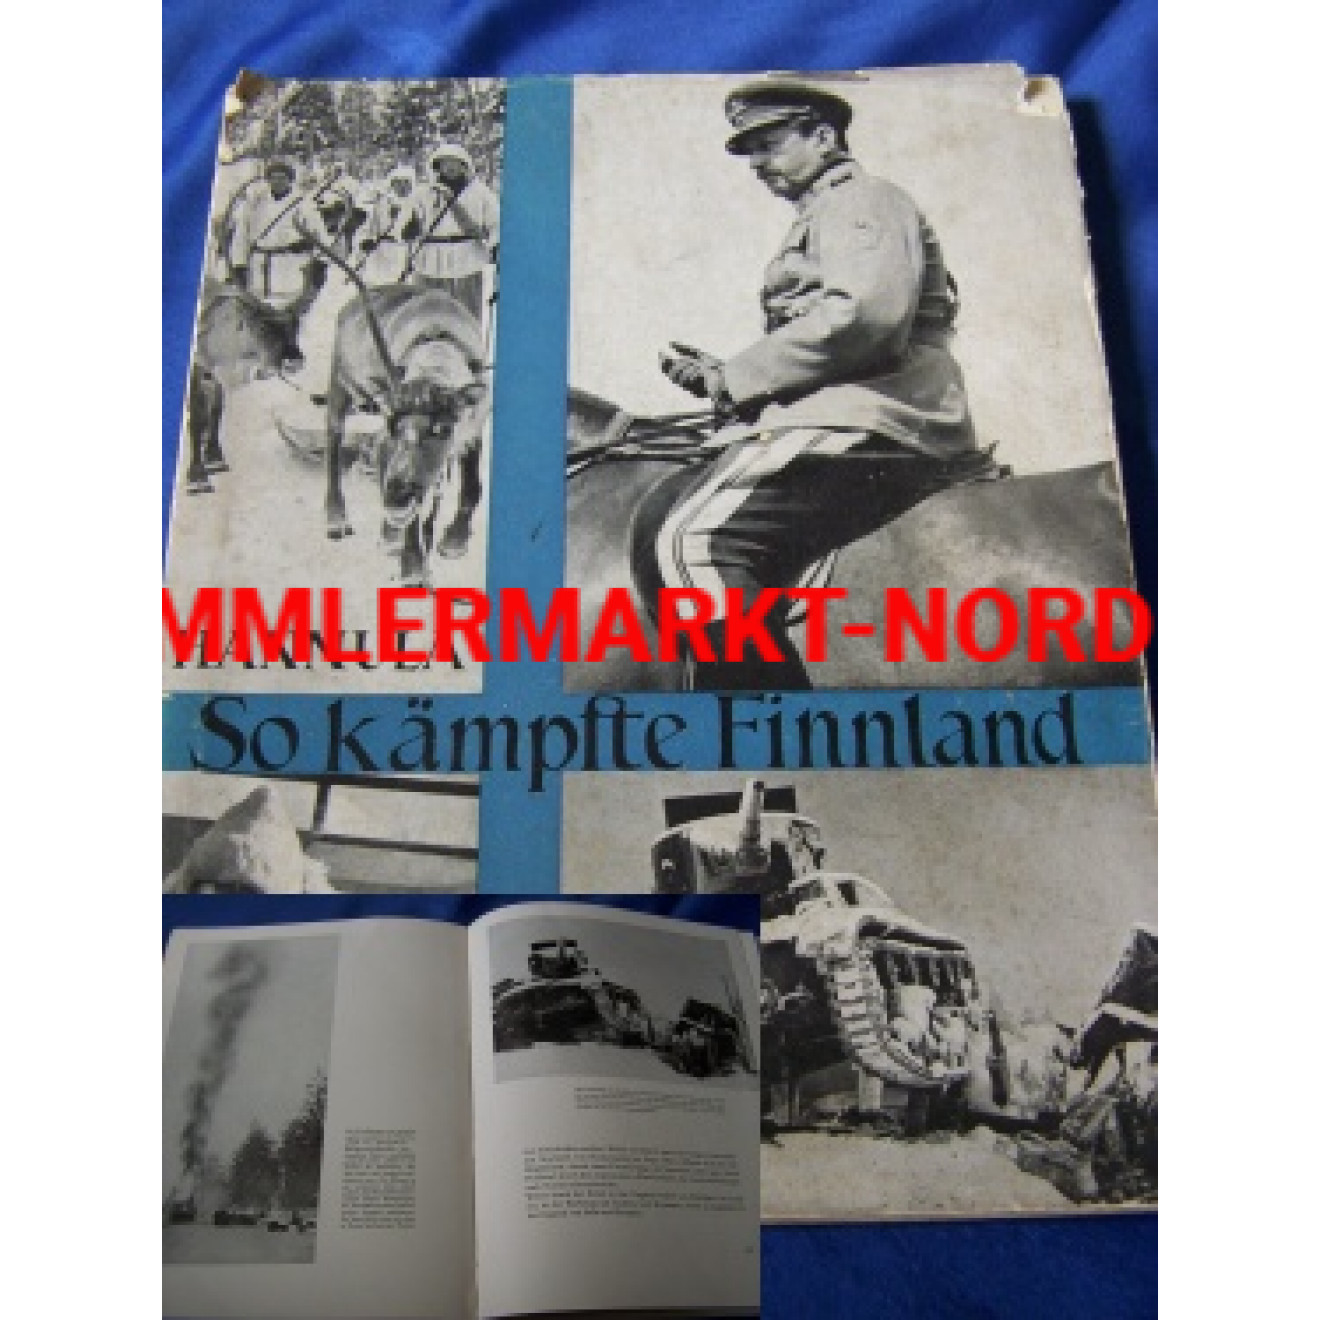 Picture book "So kämpfte Finnland - Der finnisch-sowjetische Kri